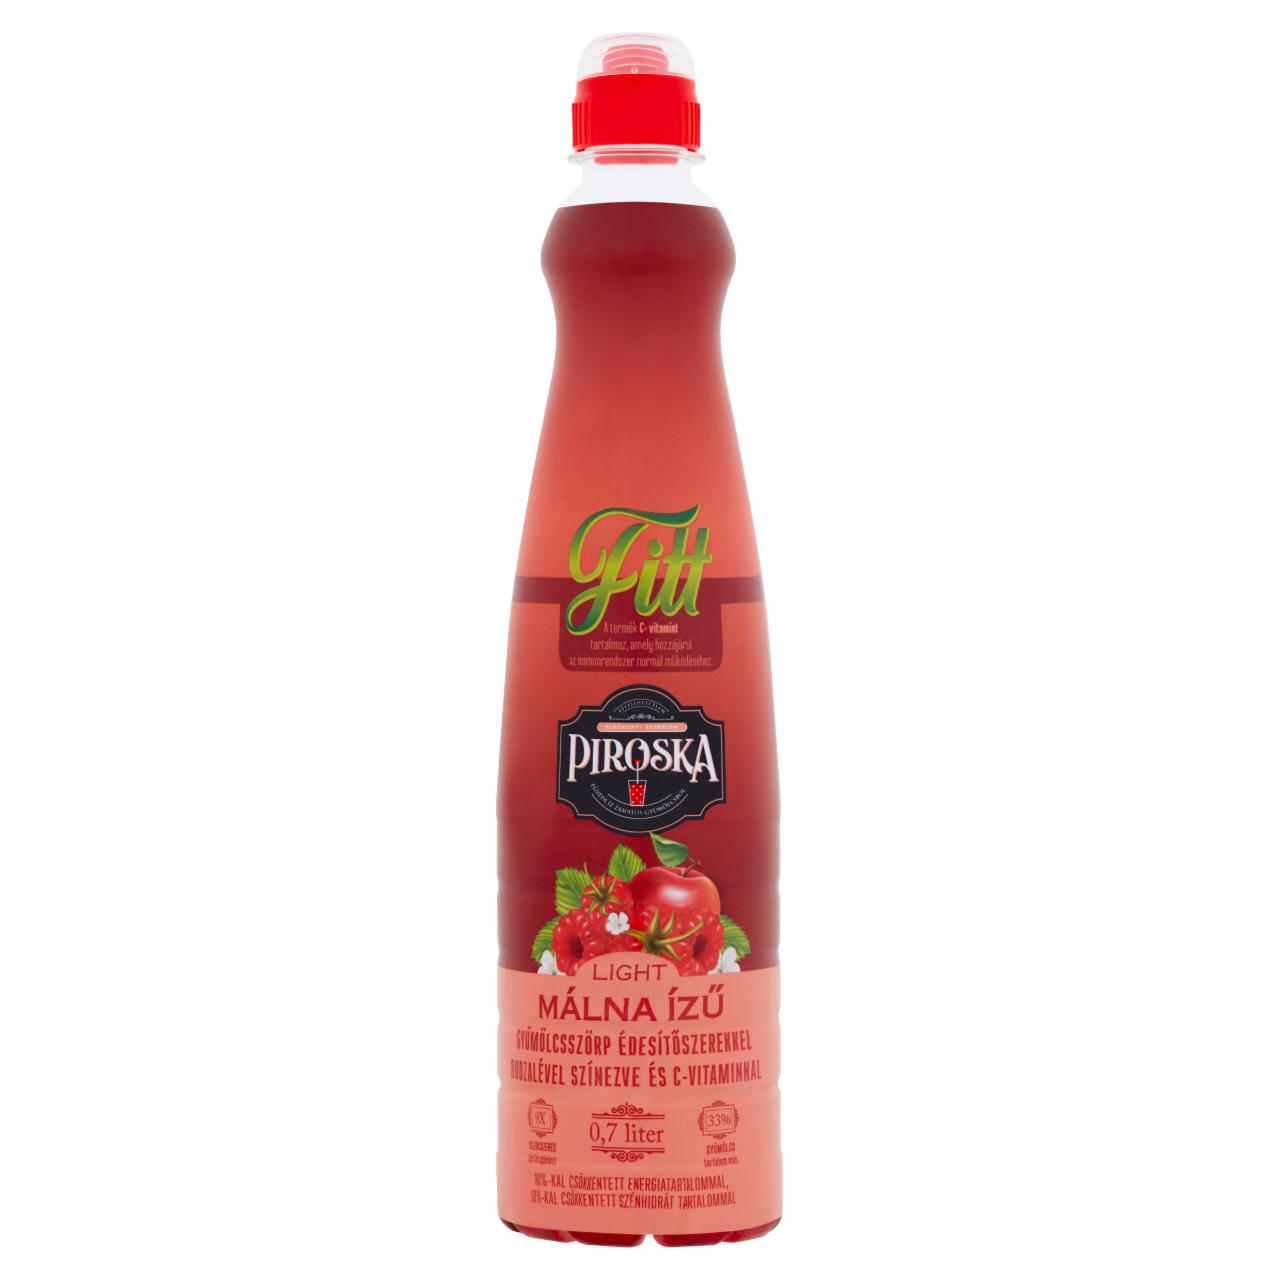 Képek - Piroska Fitt Light málna ízű gyümölcsszörp arónialével színezve és édesítőszerekkel 0,7 l